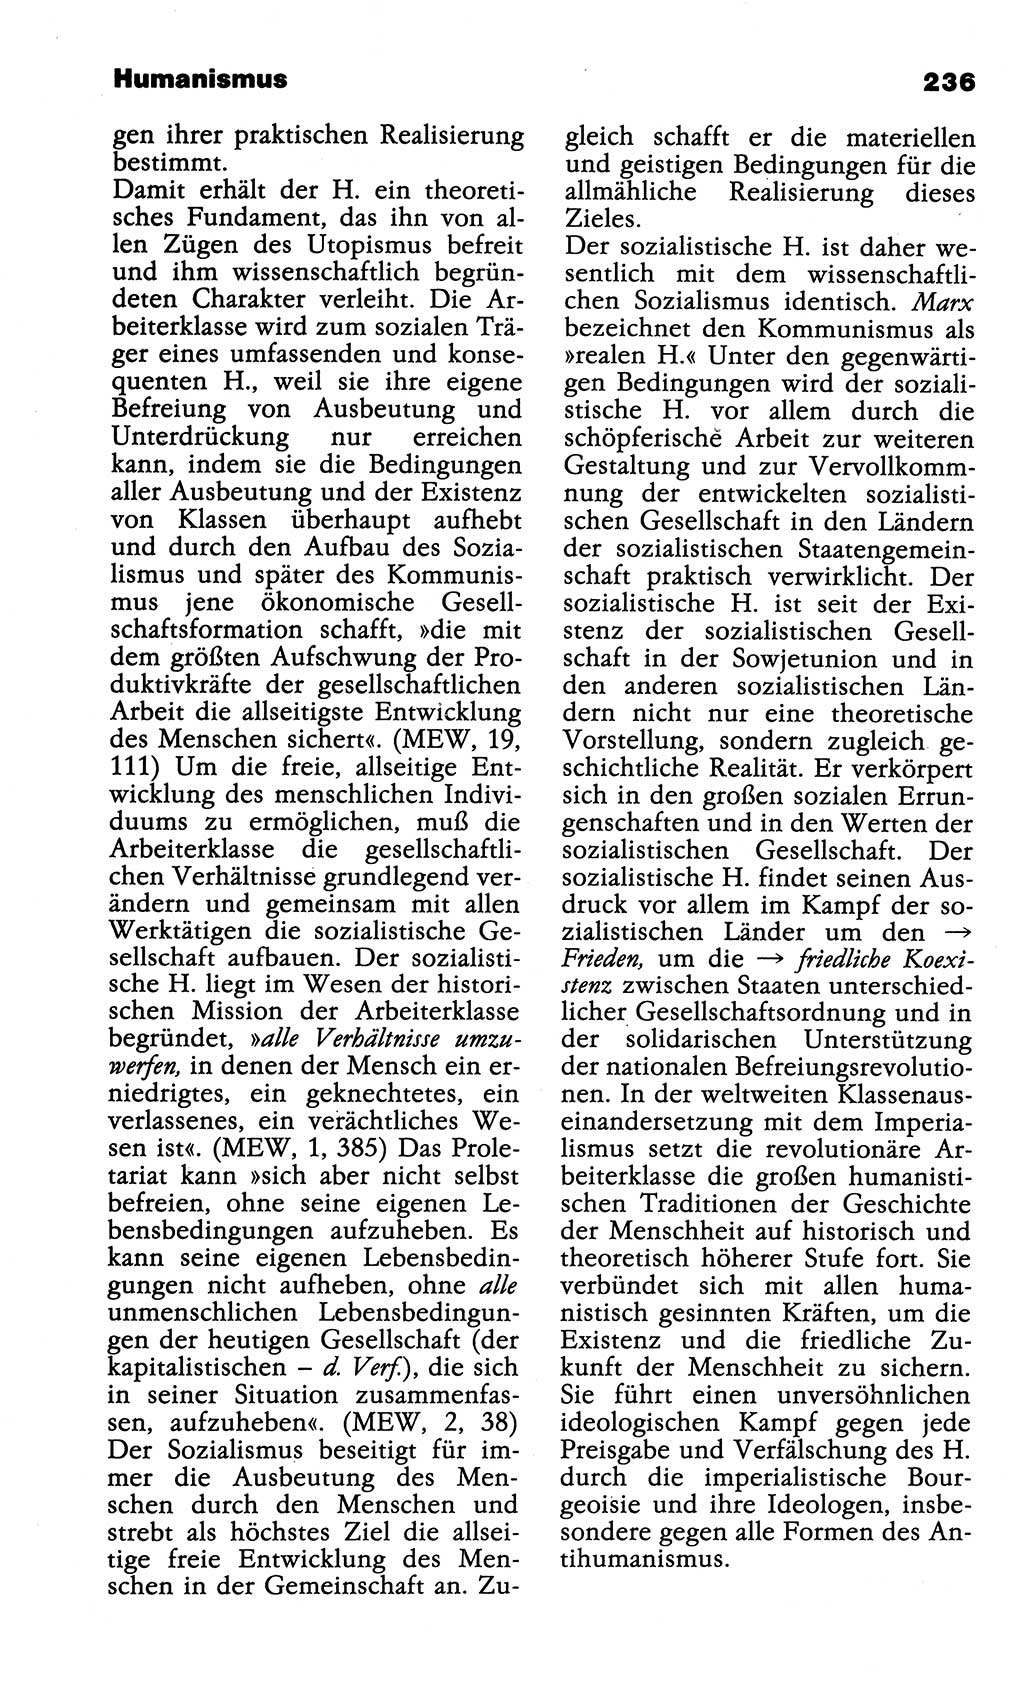 Wörterbuch der marxistisch-leninistischen Philosophie [Deutsche Demokratische Republik (DDR)] 1985, Seite 236 (Wb. ML Phil. DDR 1985, S. 236)